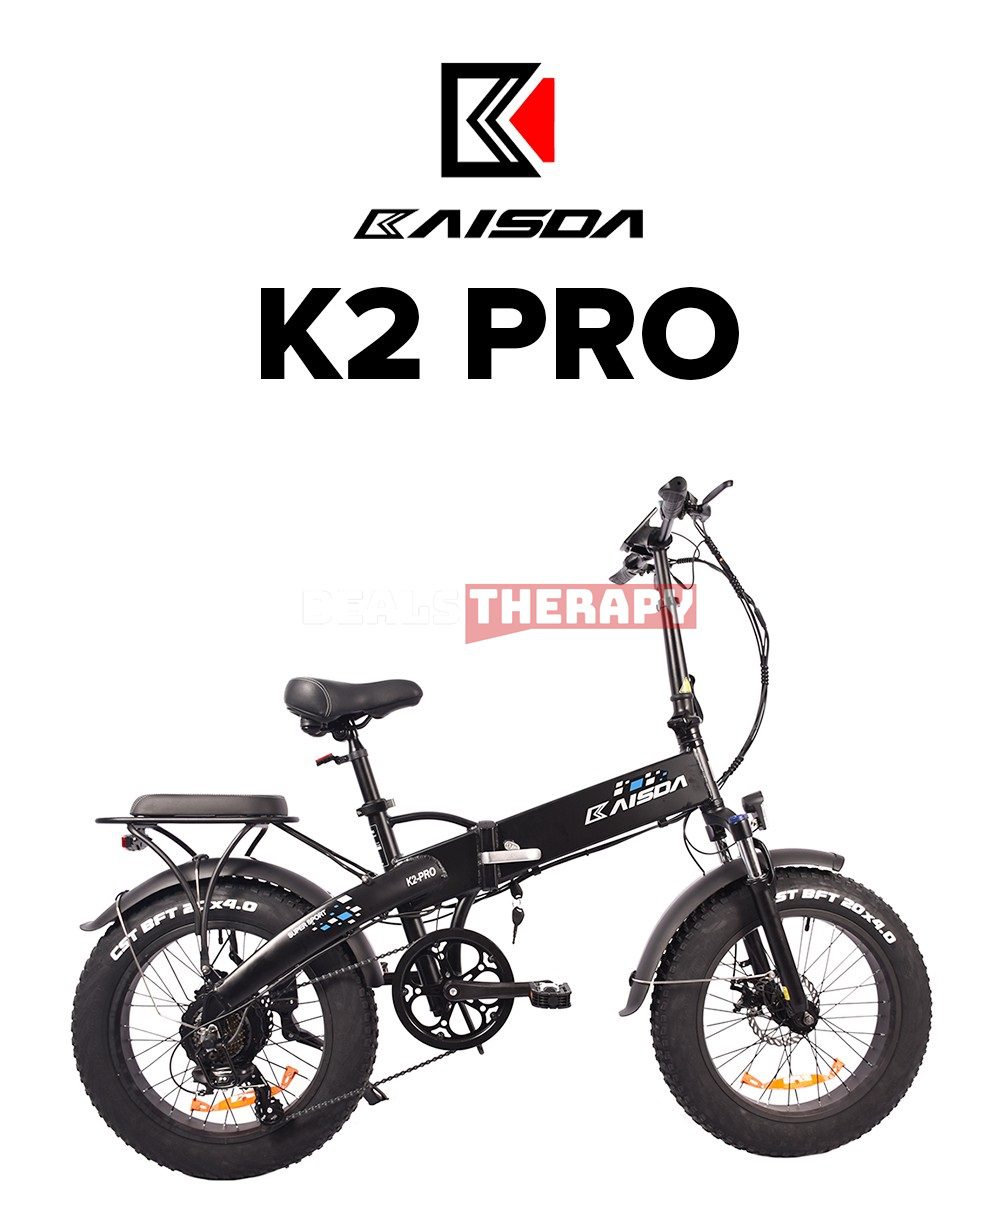 KAISDA K2 Pro